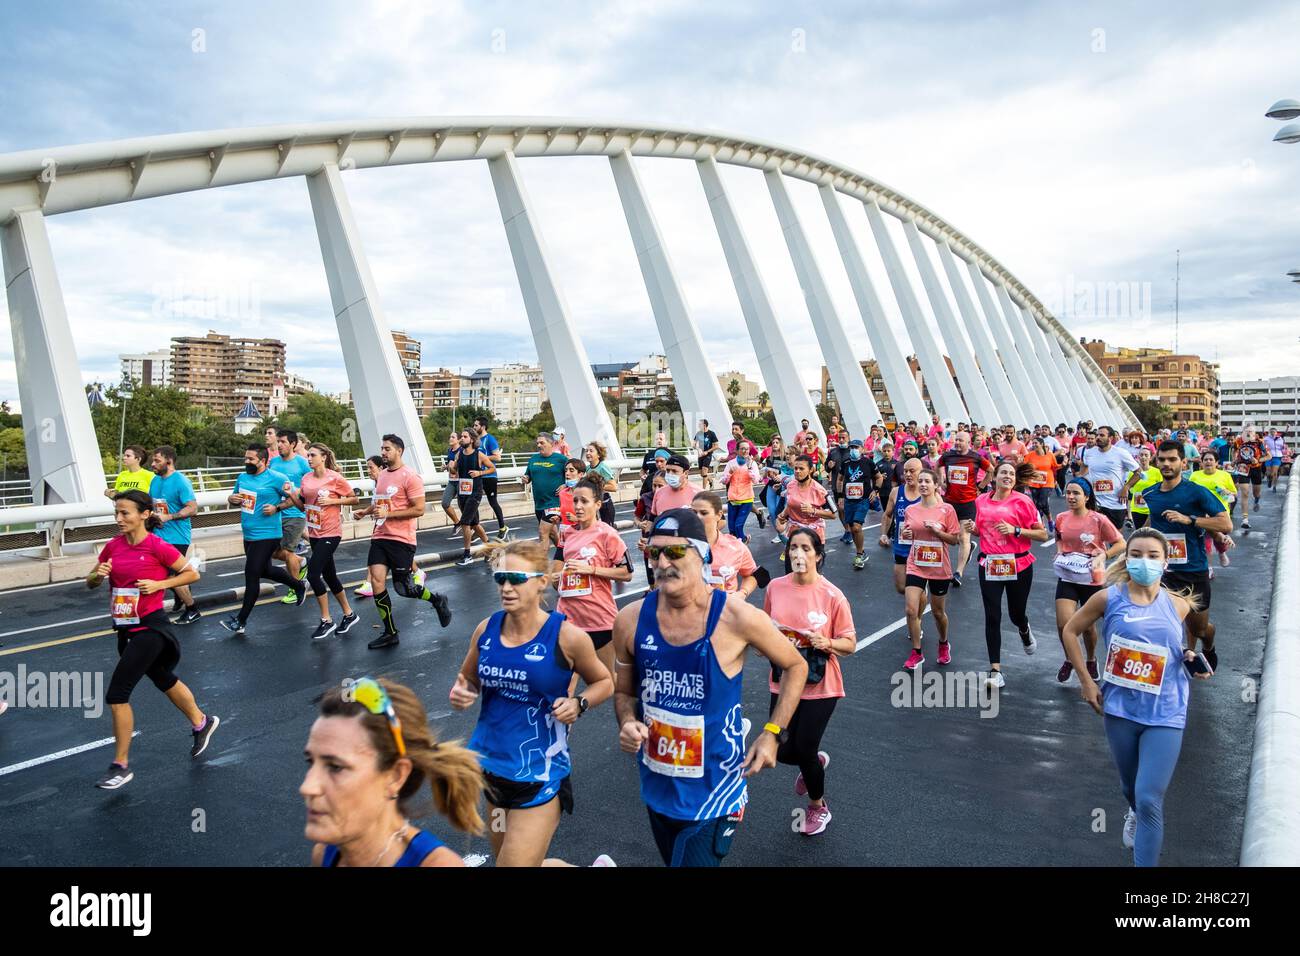 Valencia, Spanien; 31th. oktober 2021: Teilnehmende Athleten, die an einem beliebten Rennen teilnehmen Stockfoto